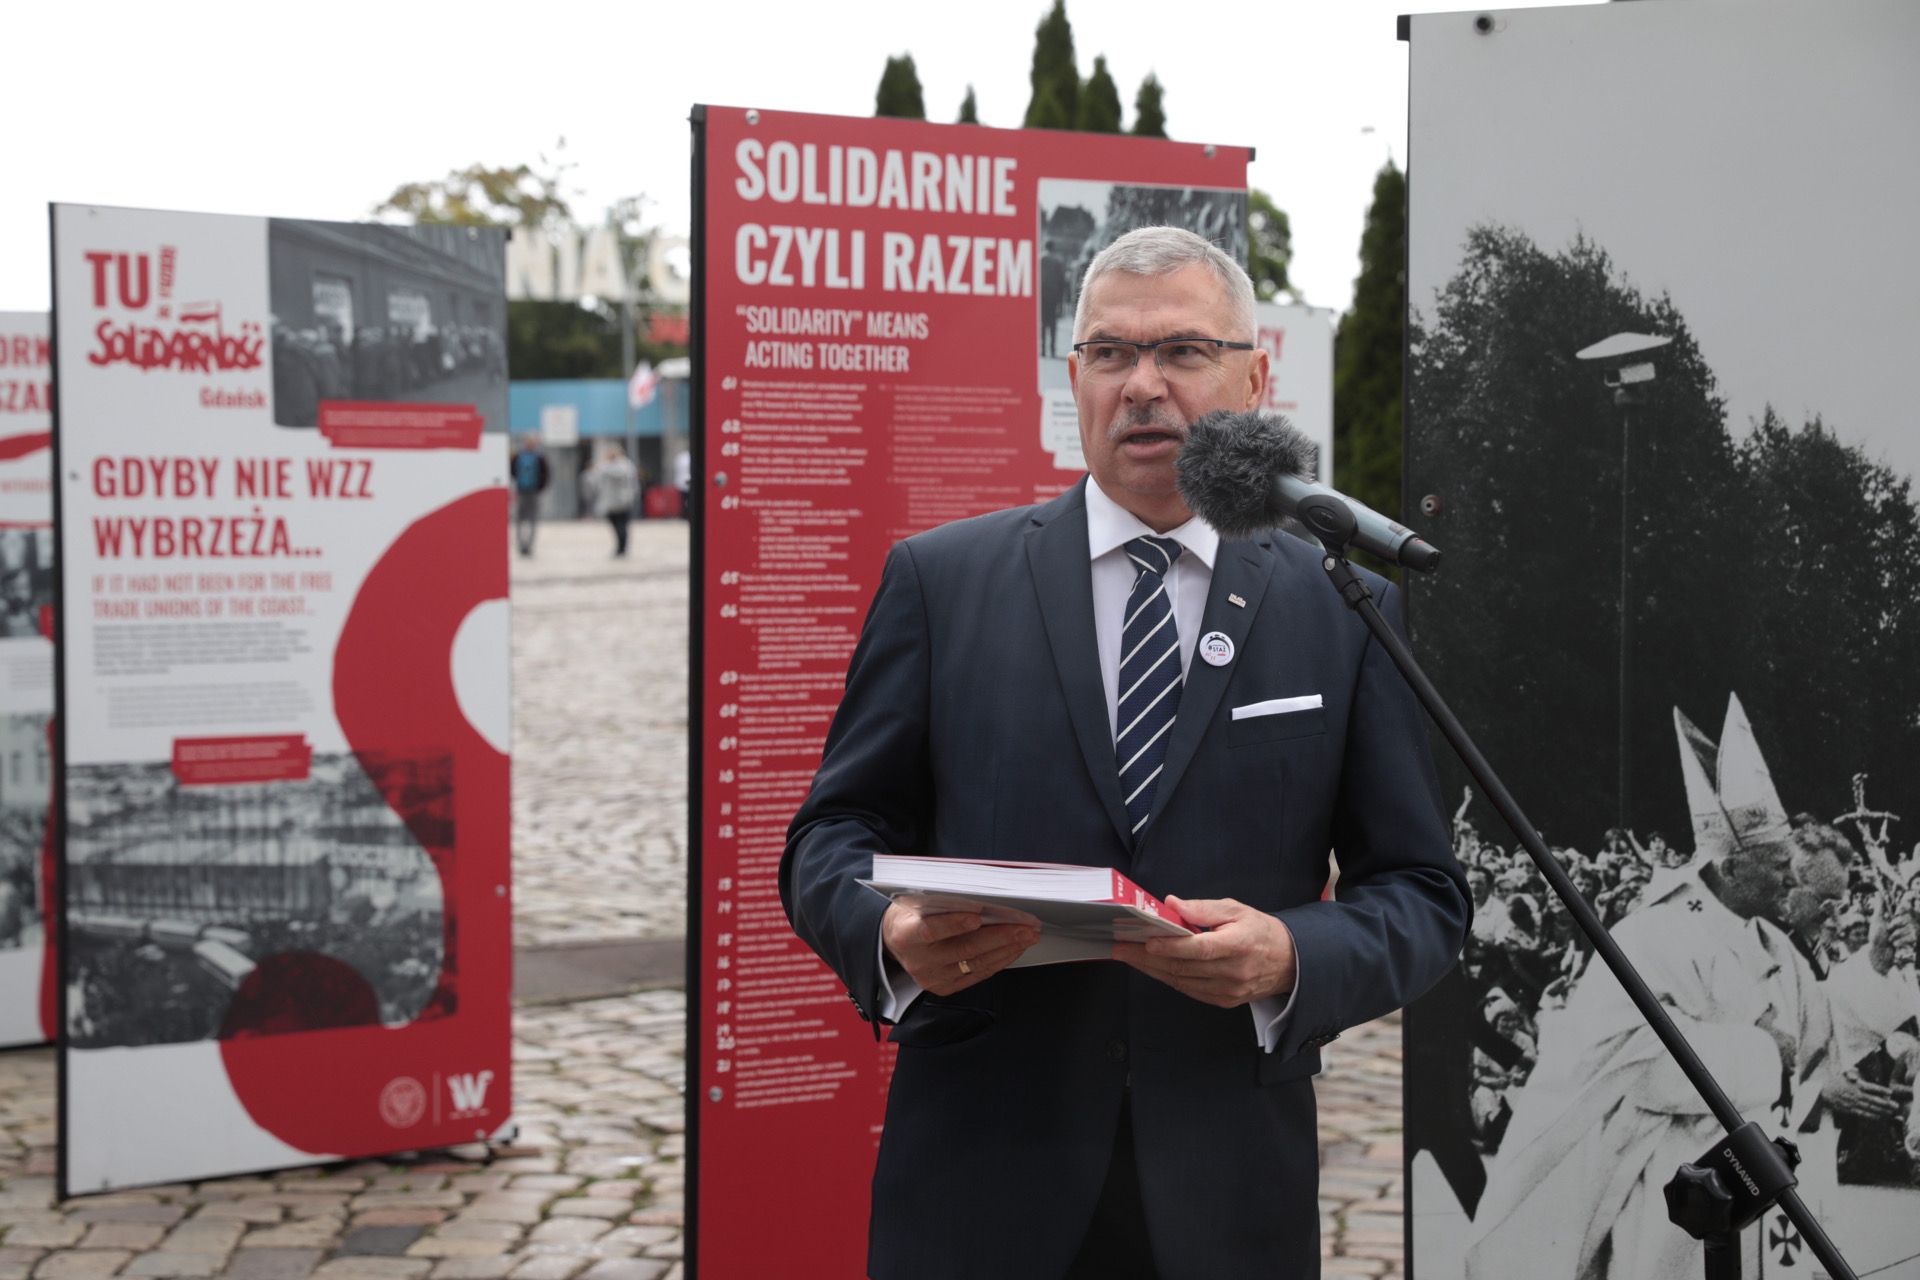 Wystawa IPN „TU rodziła się Solidarność” na placu Solidarności w Gdańsku – 31 sierpnia 2021. Fot. Mikołaj Bujak (IPN)